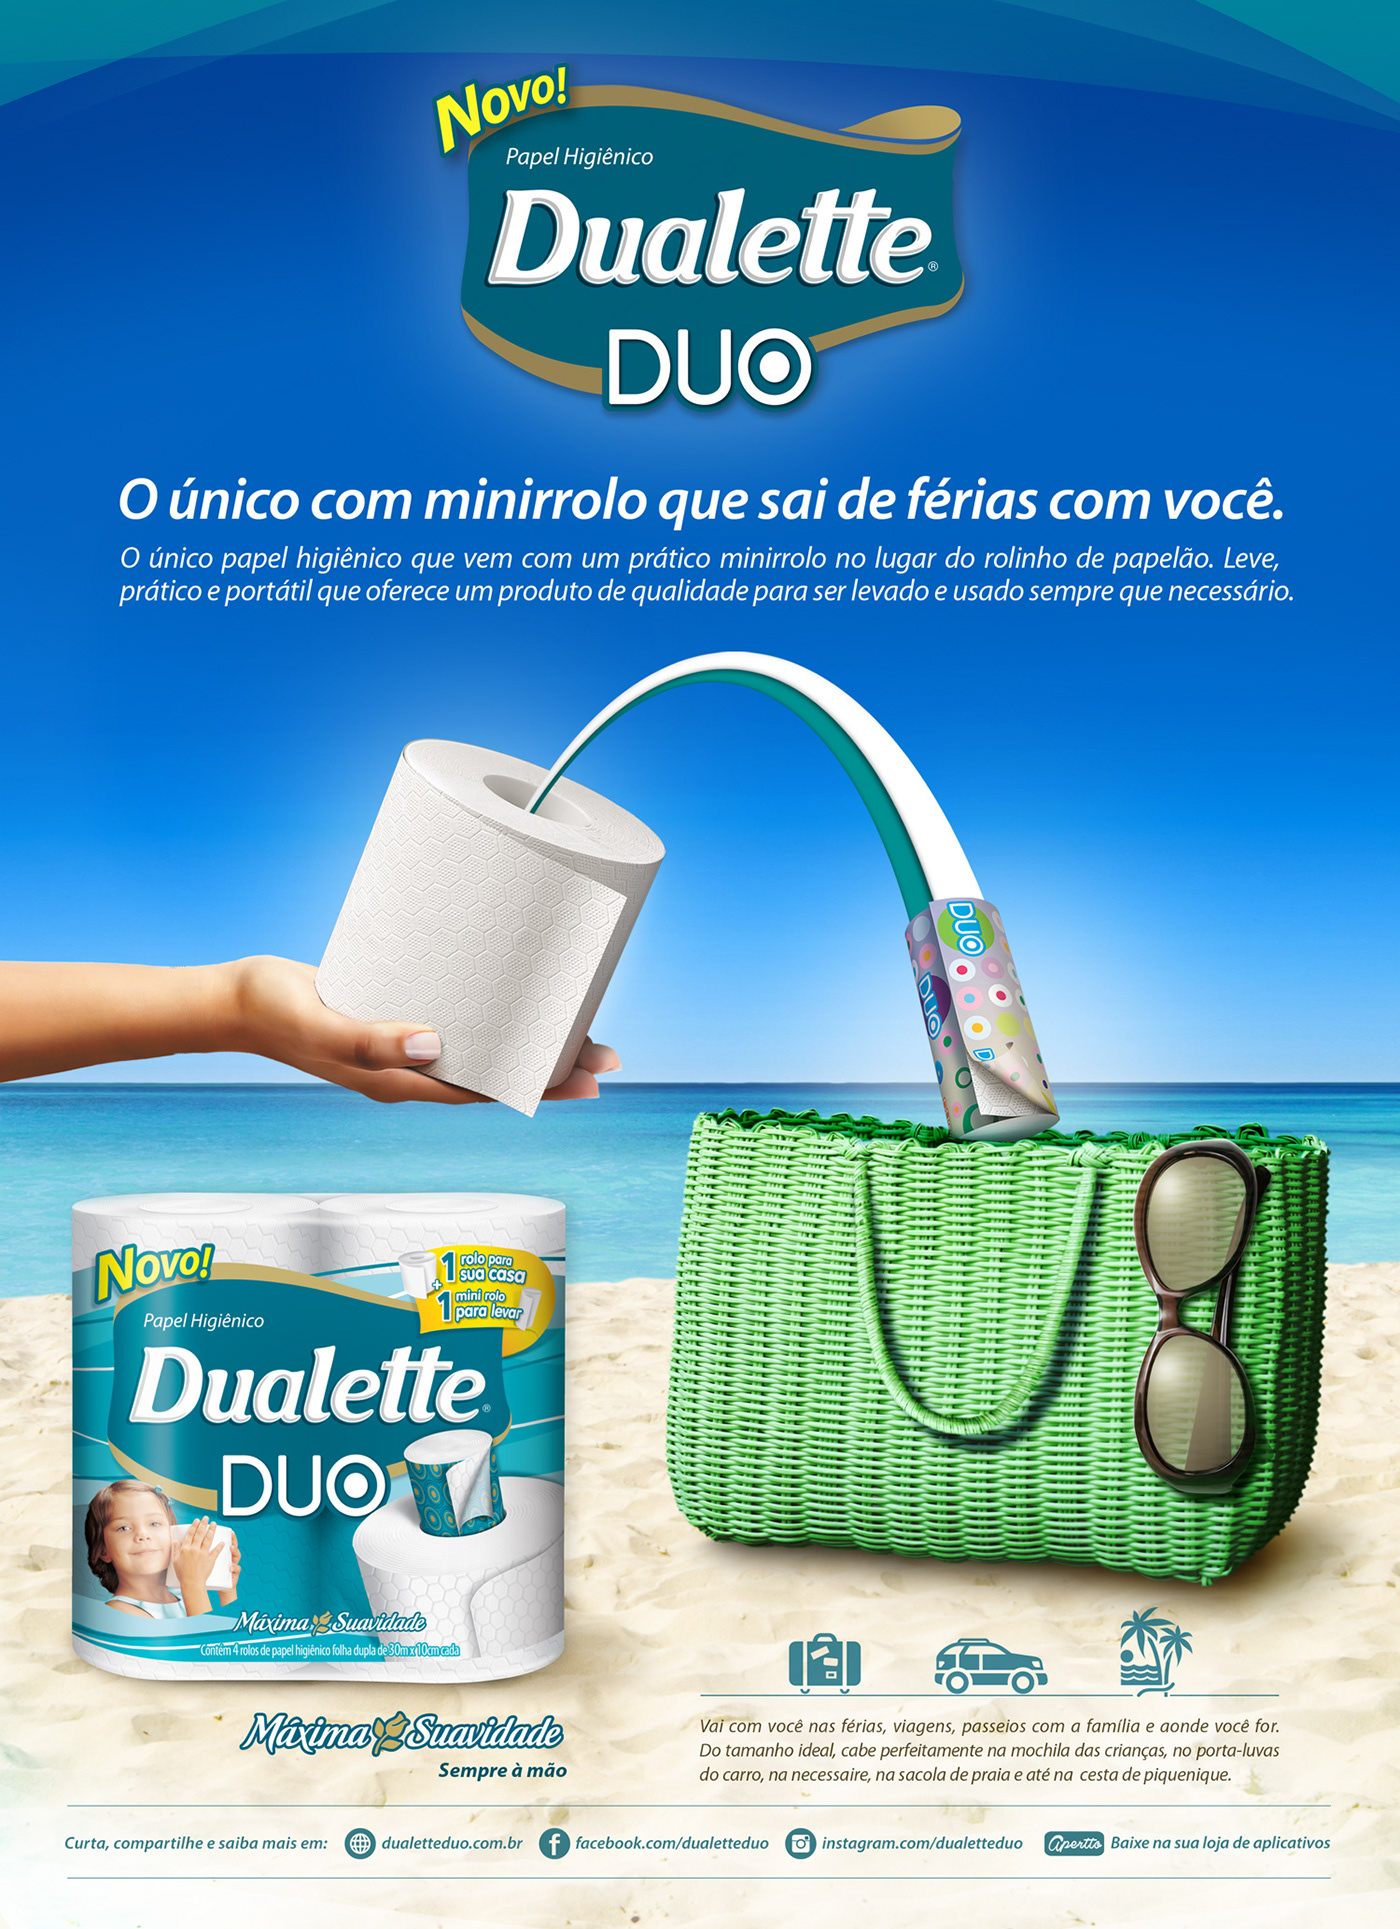 Dualette Melhoramentos ads Dalette Duo